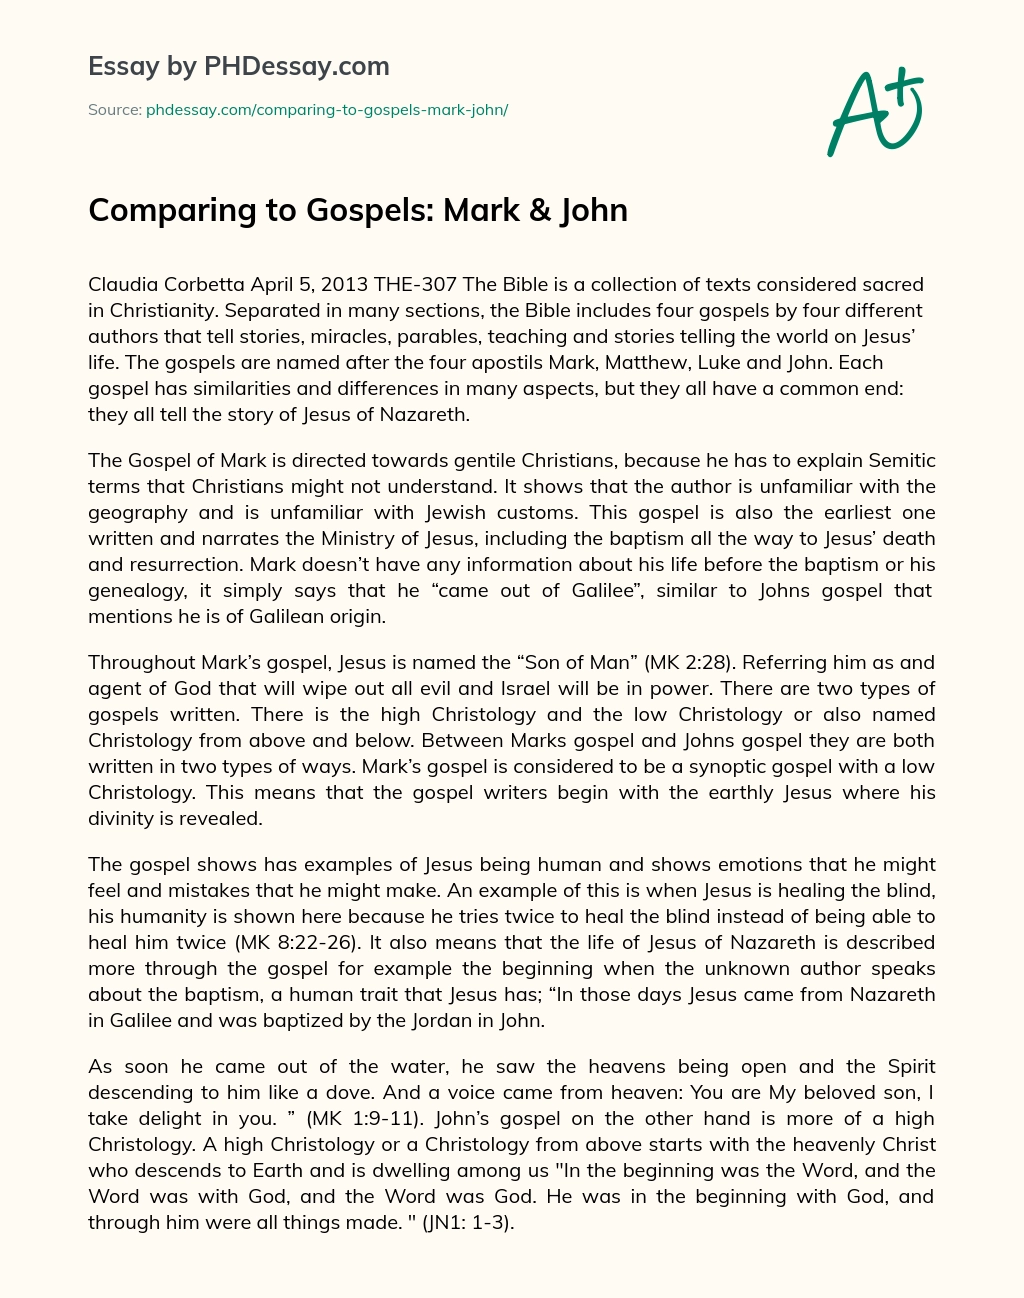 Comparing to Gospels: Mark & John essay